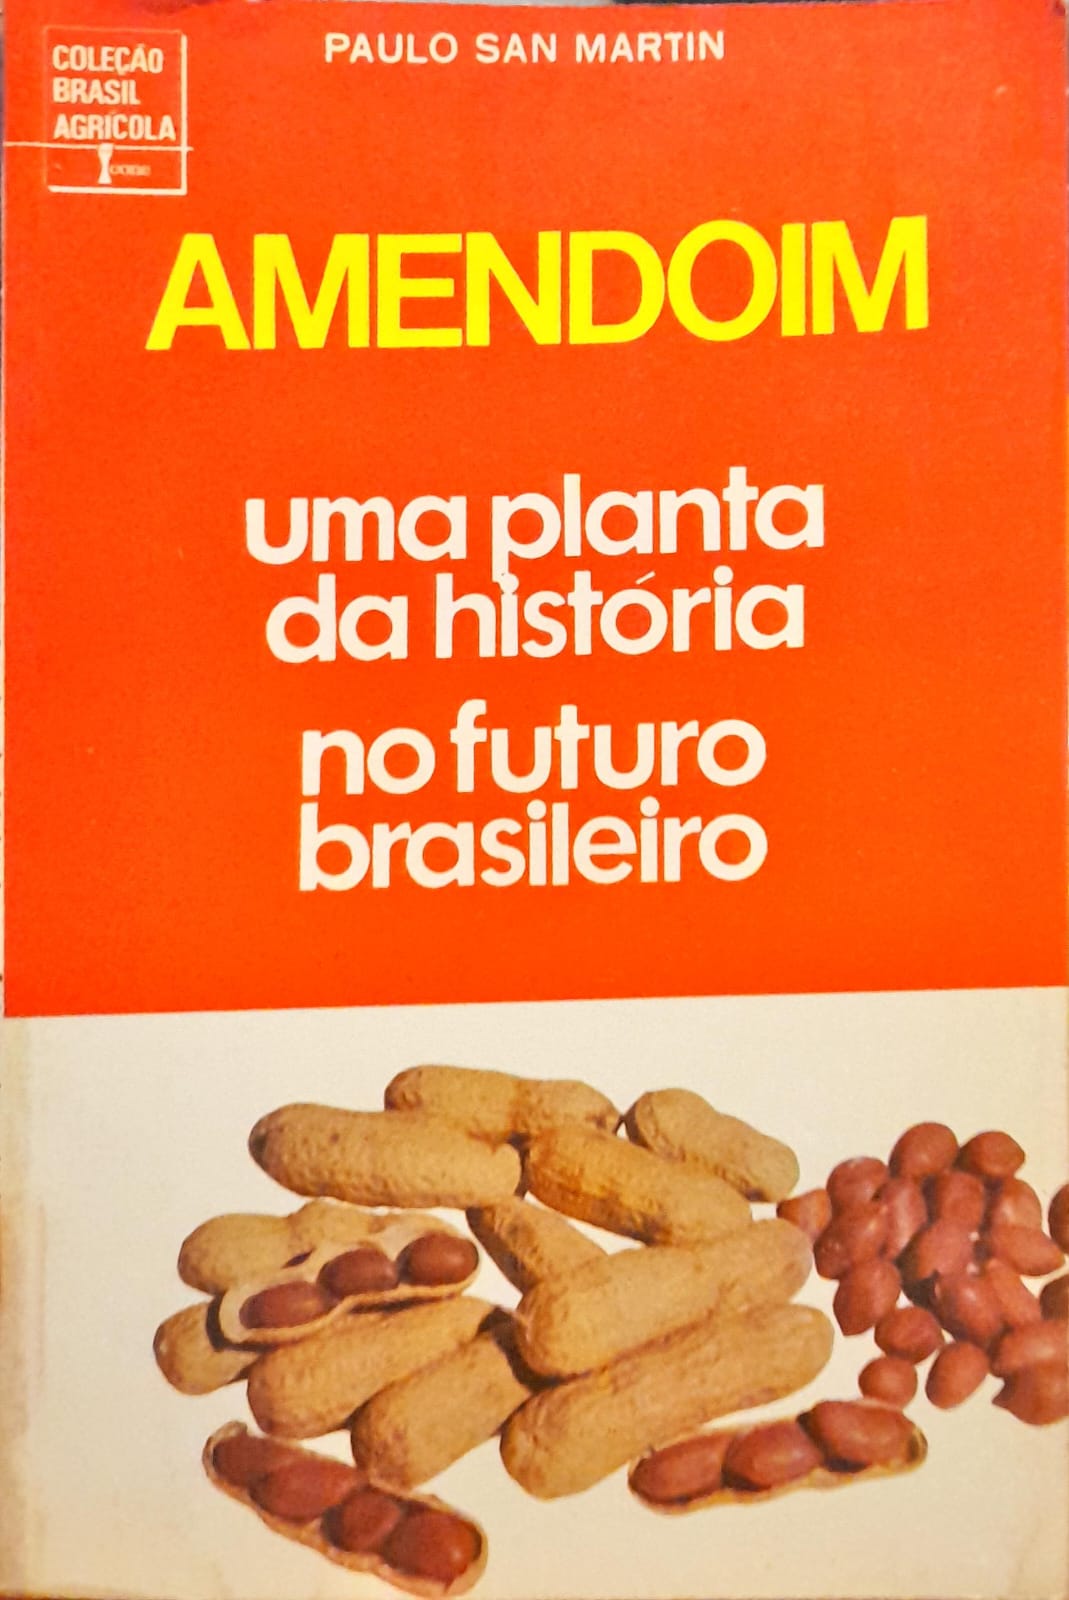 Amendoim – Wikipédia, a enciclopédia livre